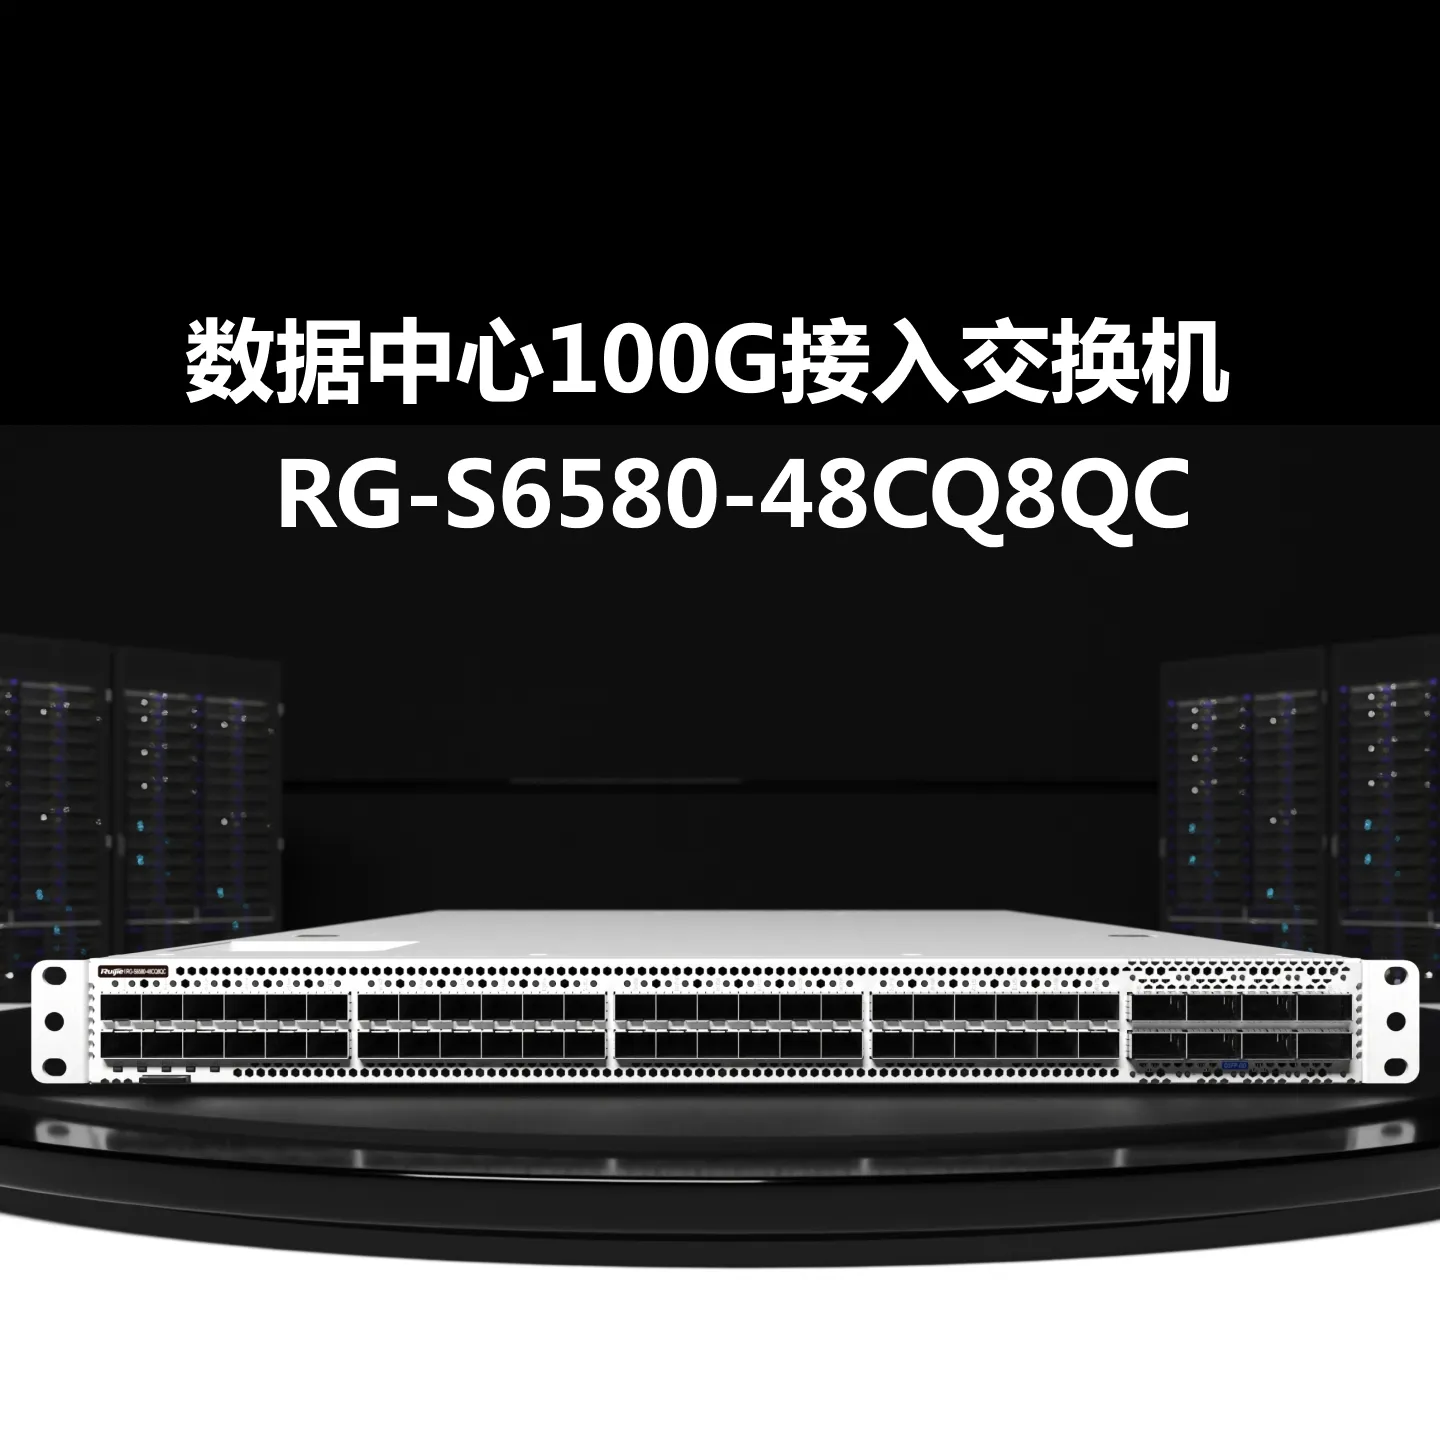 RG-S6580-48CQ8QC